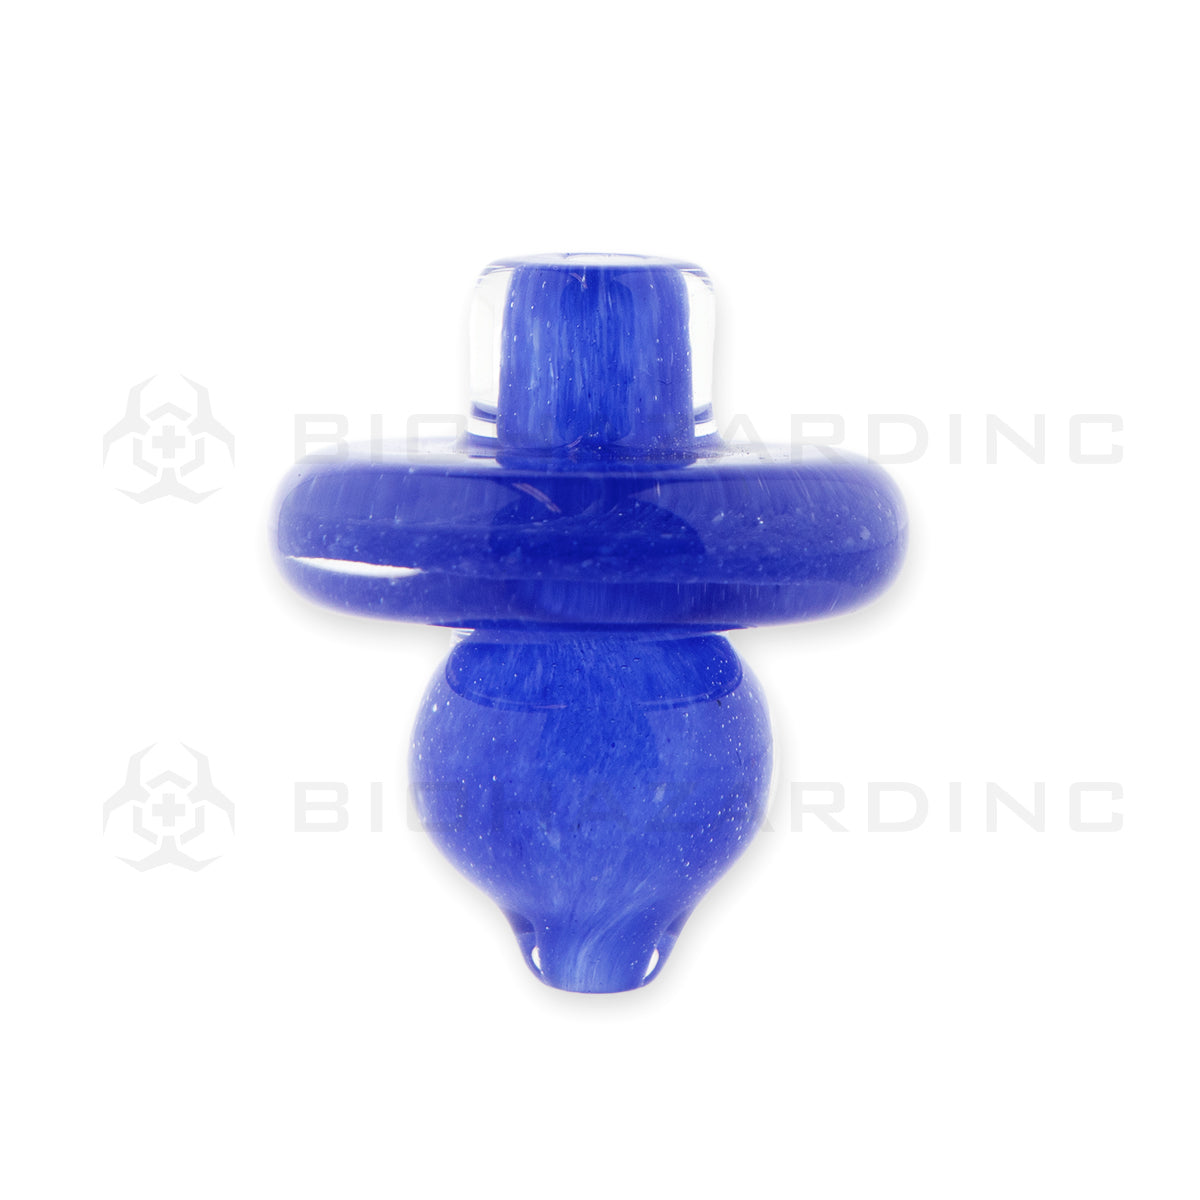 Carb Cap | Glass Directional Bubble Carb Cap | Various Colors Carb Cap Biohazard Inc Blue  